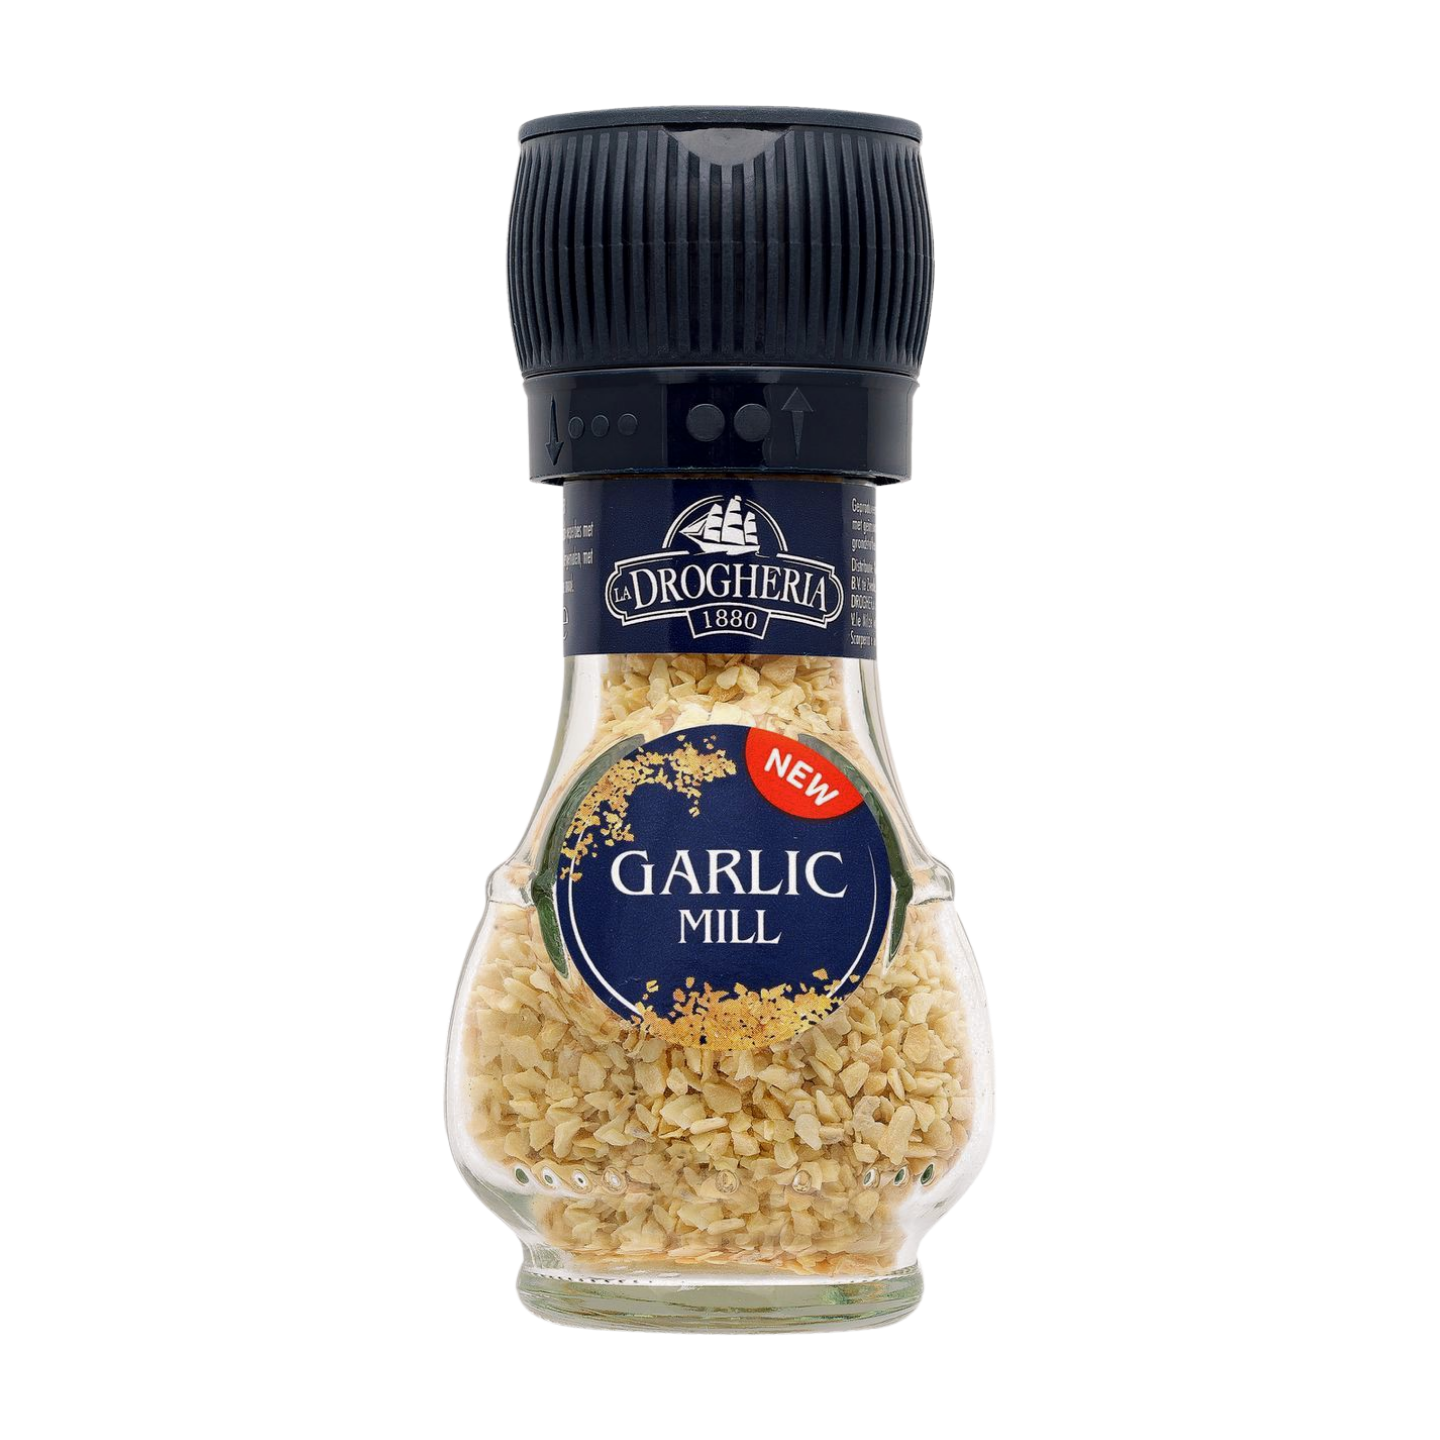 Drogheria & Alimentari Garlic Mill (6x50g)